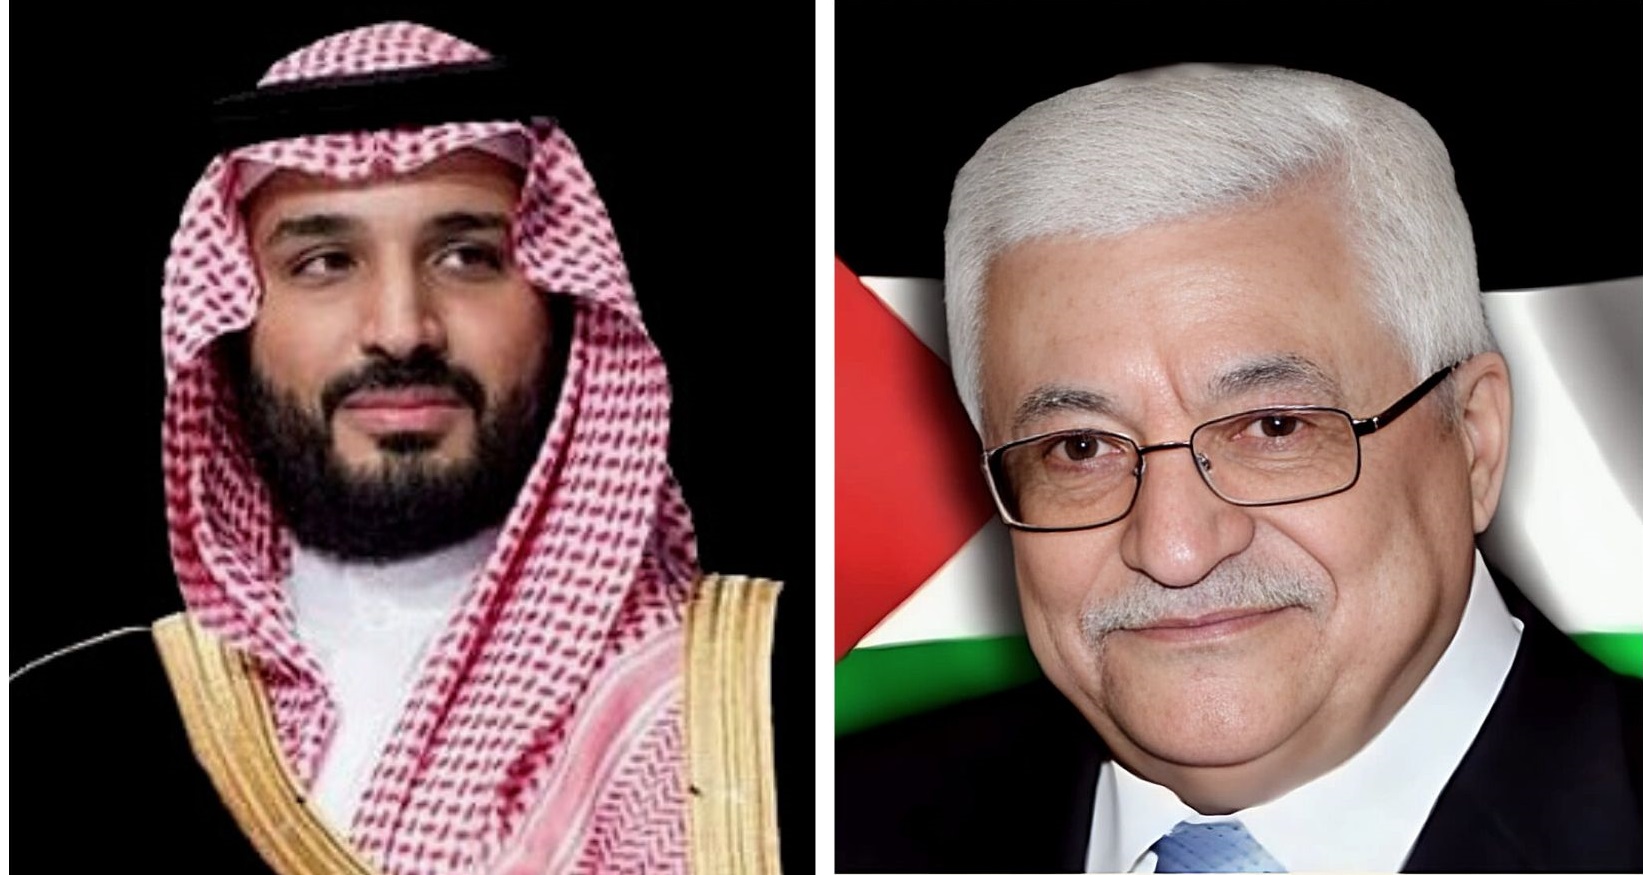 السعودية تحدد موقفها ..ولي العهد السعودي يؤكد استمرار وقوفه الى جانب الفلسطينيين